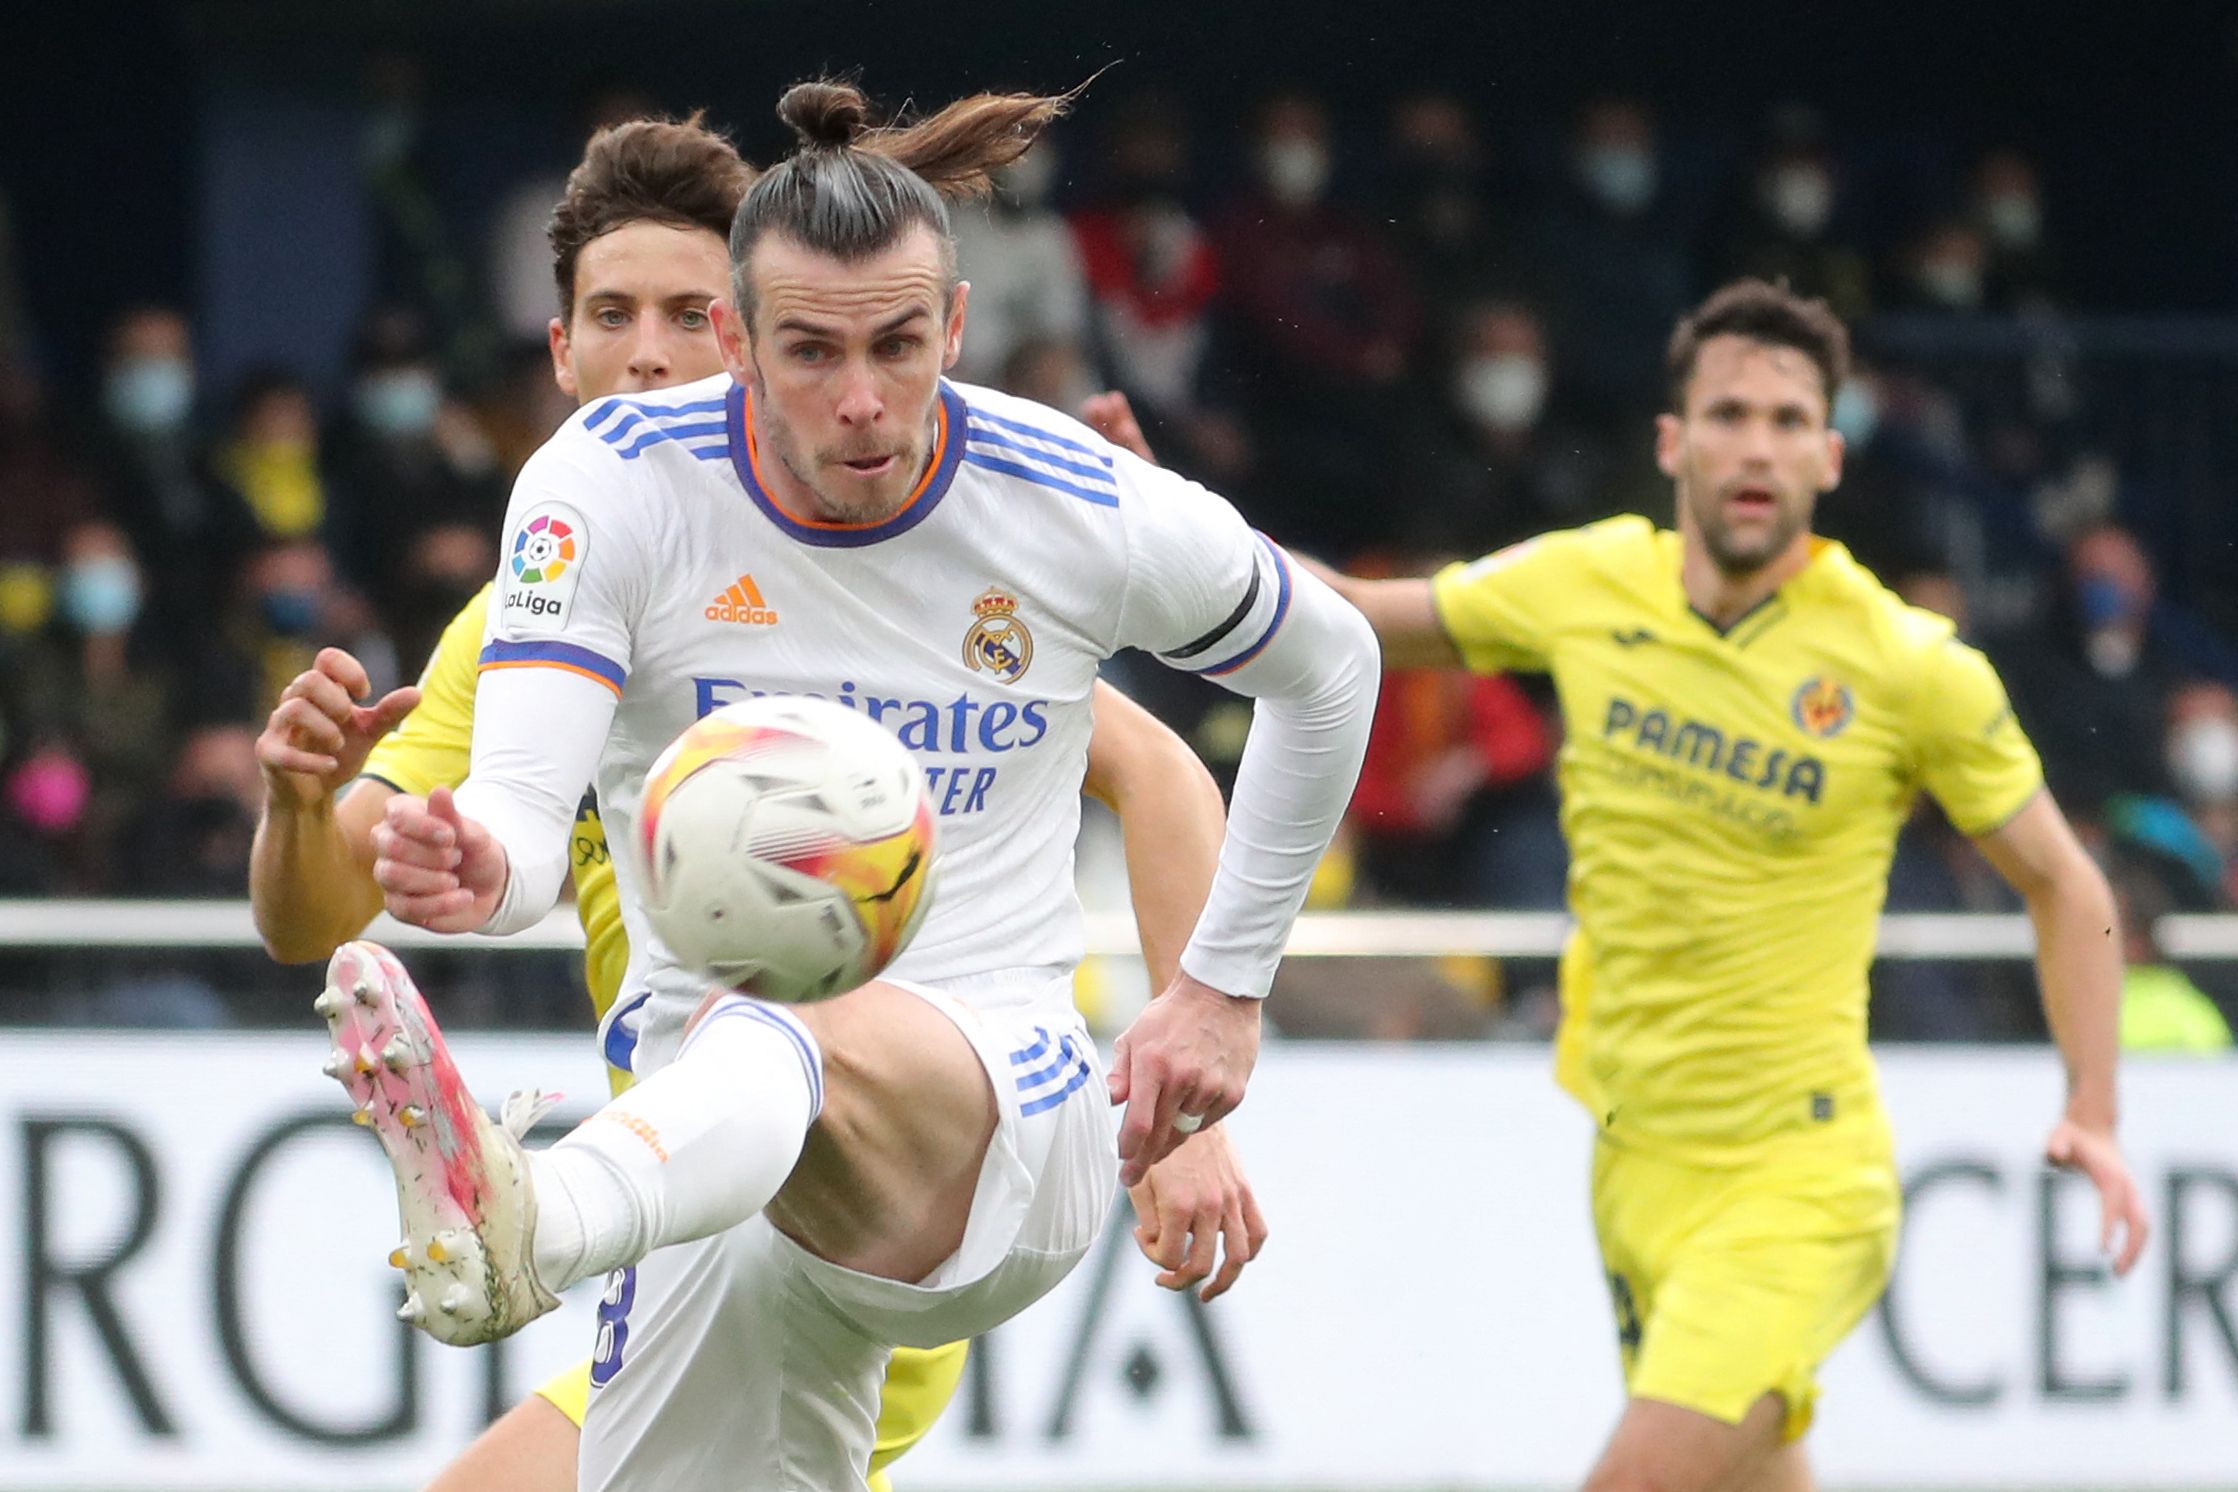 Gareth Bale no pudo marcar la diferencia en el marcador. (Foto Prensa Libre: AFP)